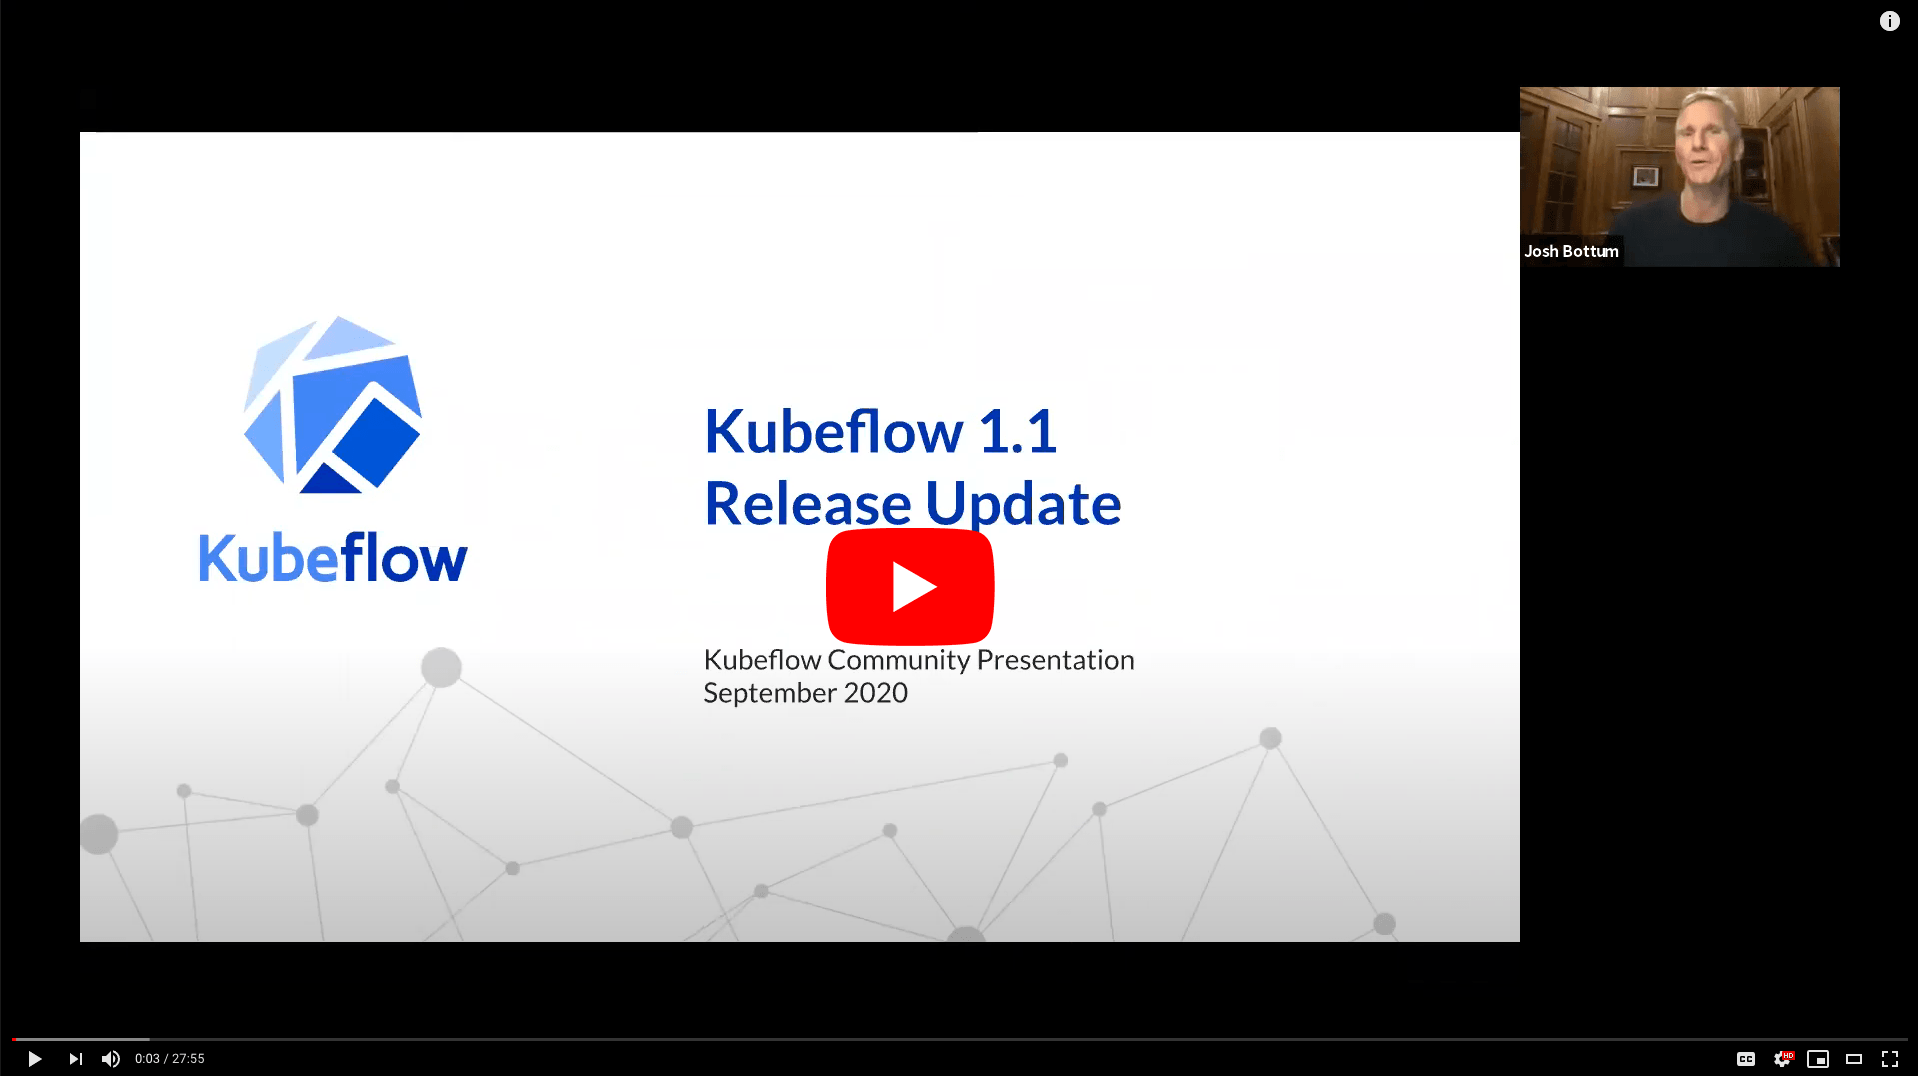 Kubeflow 1.1 Community Release Update